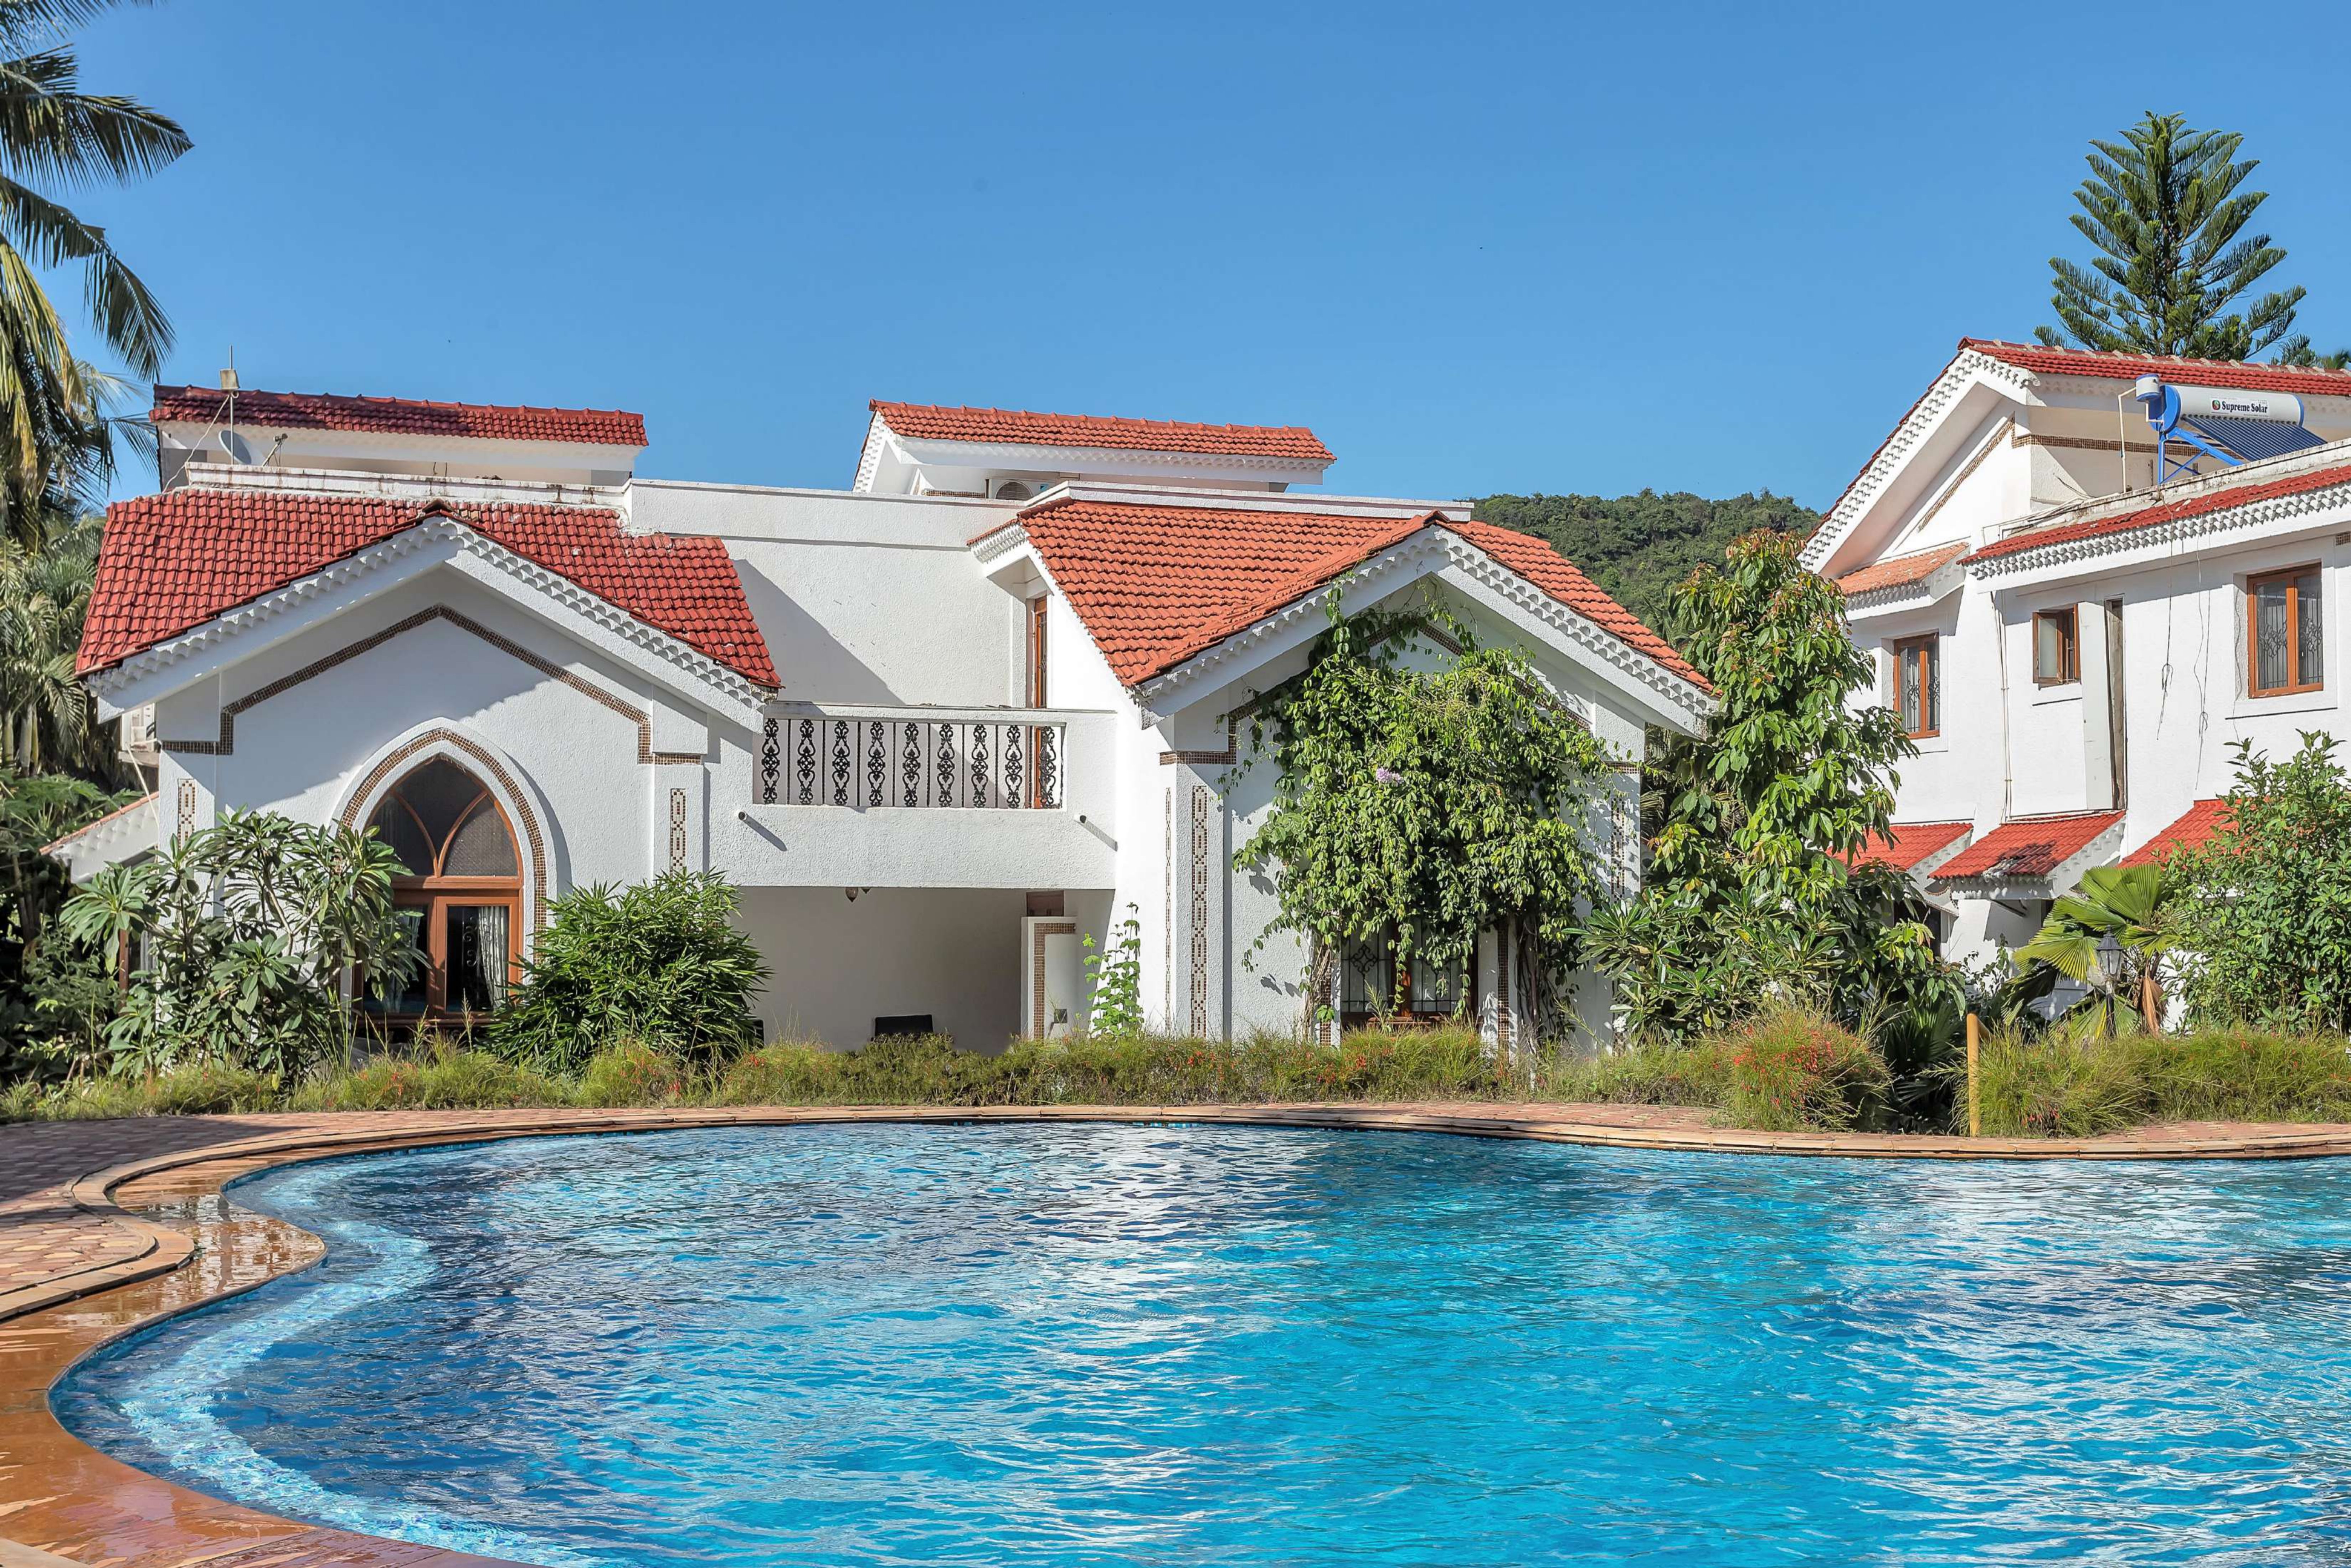 Luxury villas in Arpora, North Goa, India LT Apartment-398